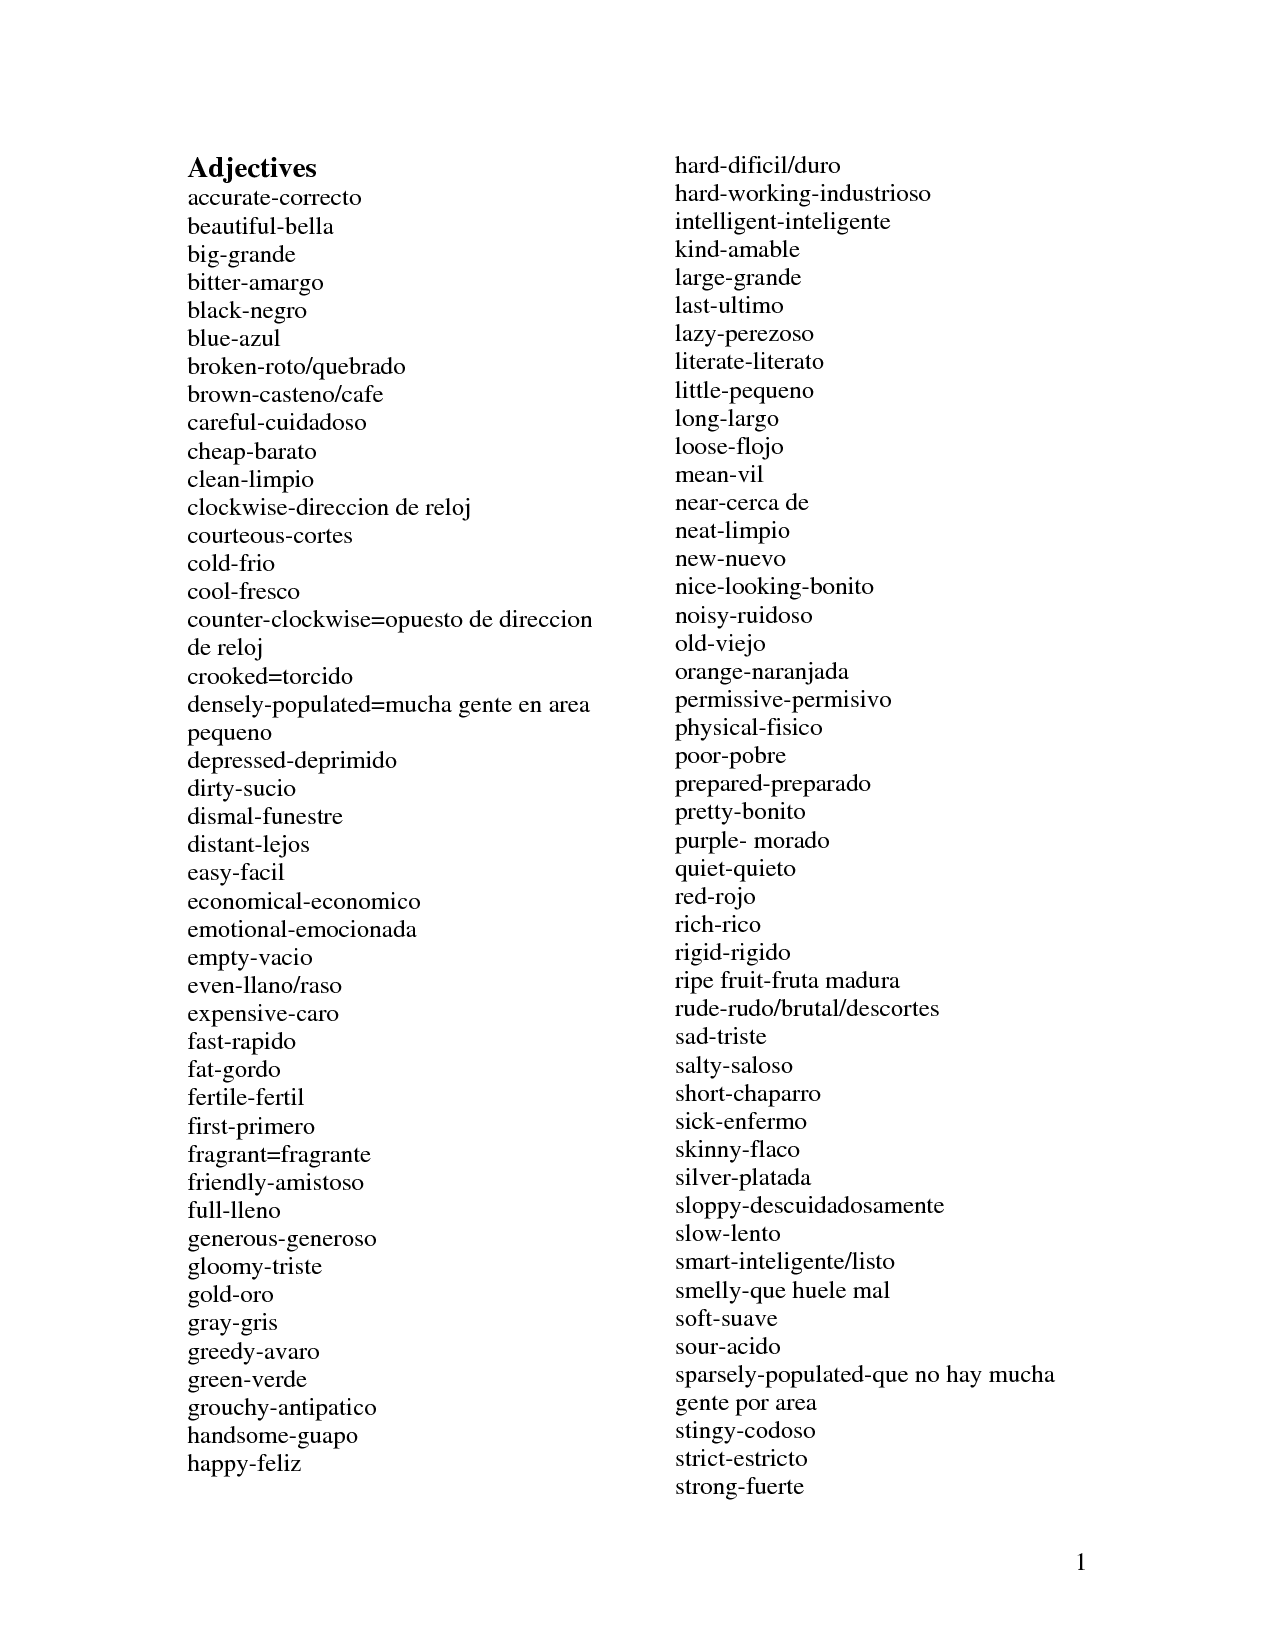 Possessive Adjectives Spanish Worksheet